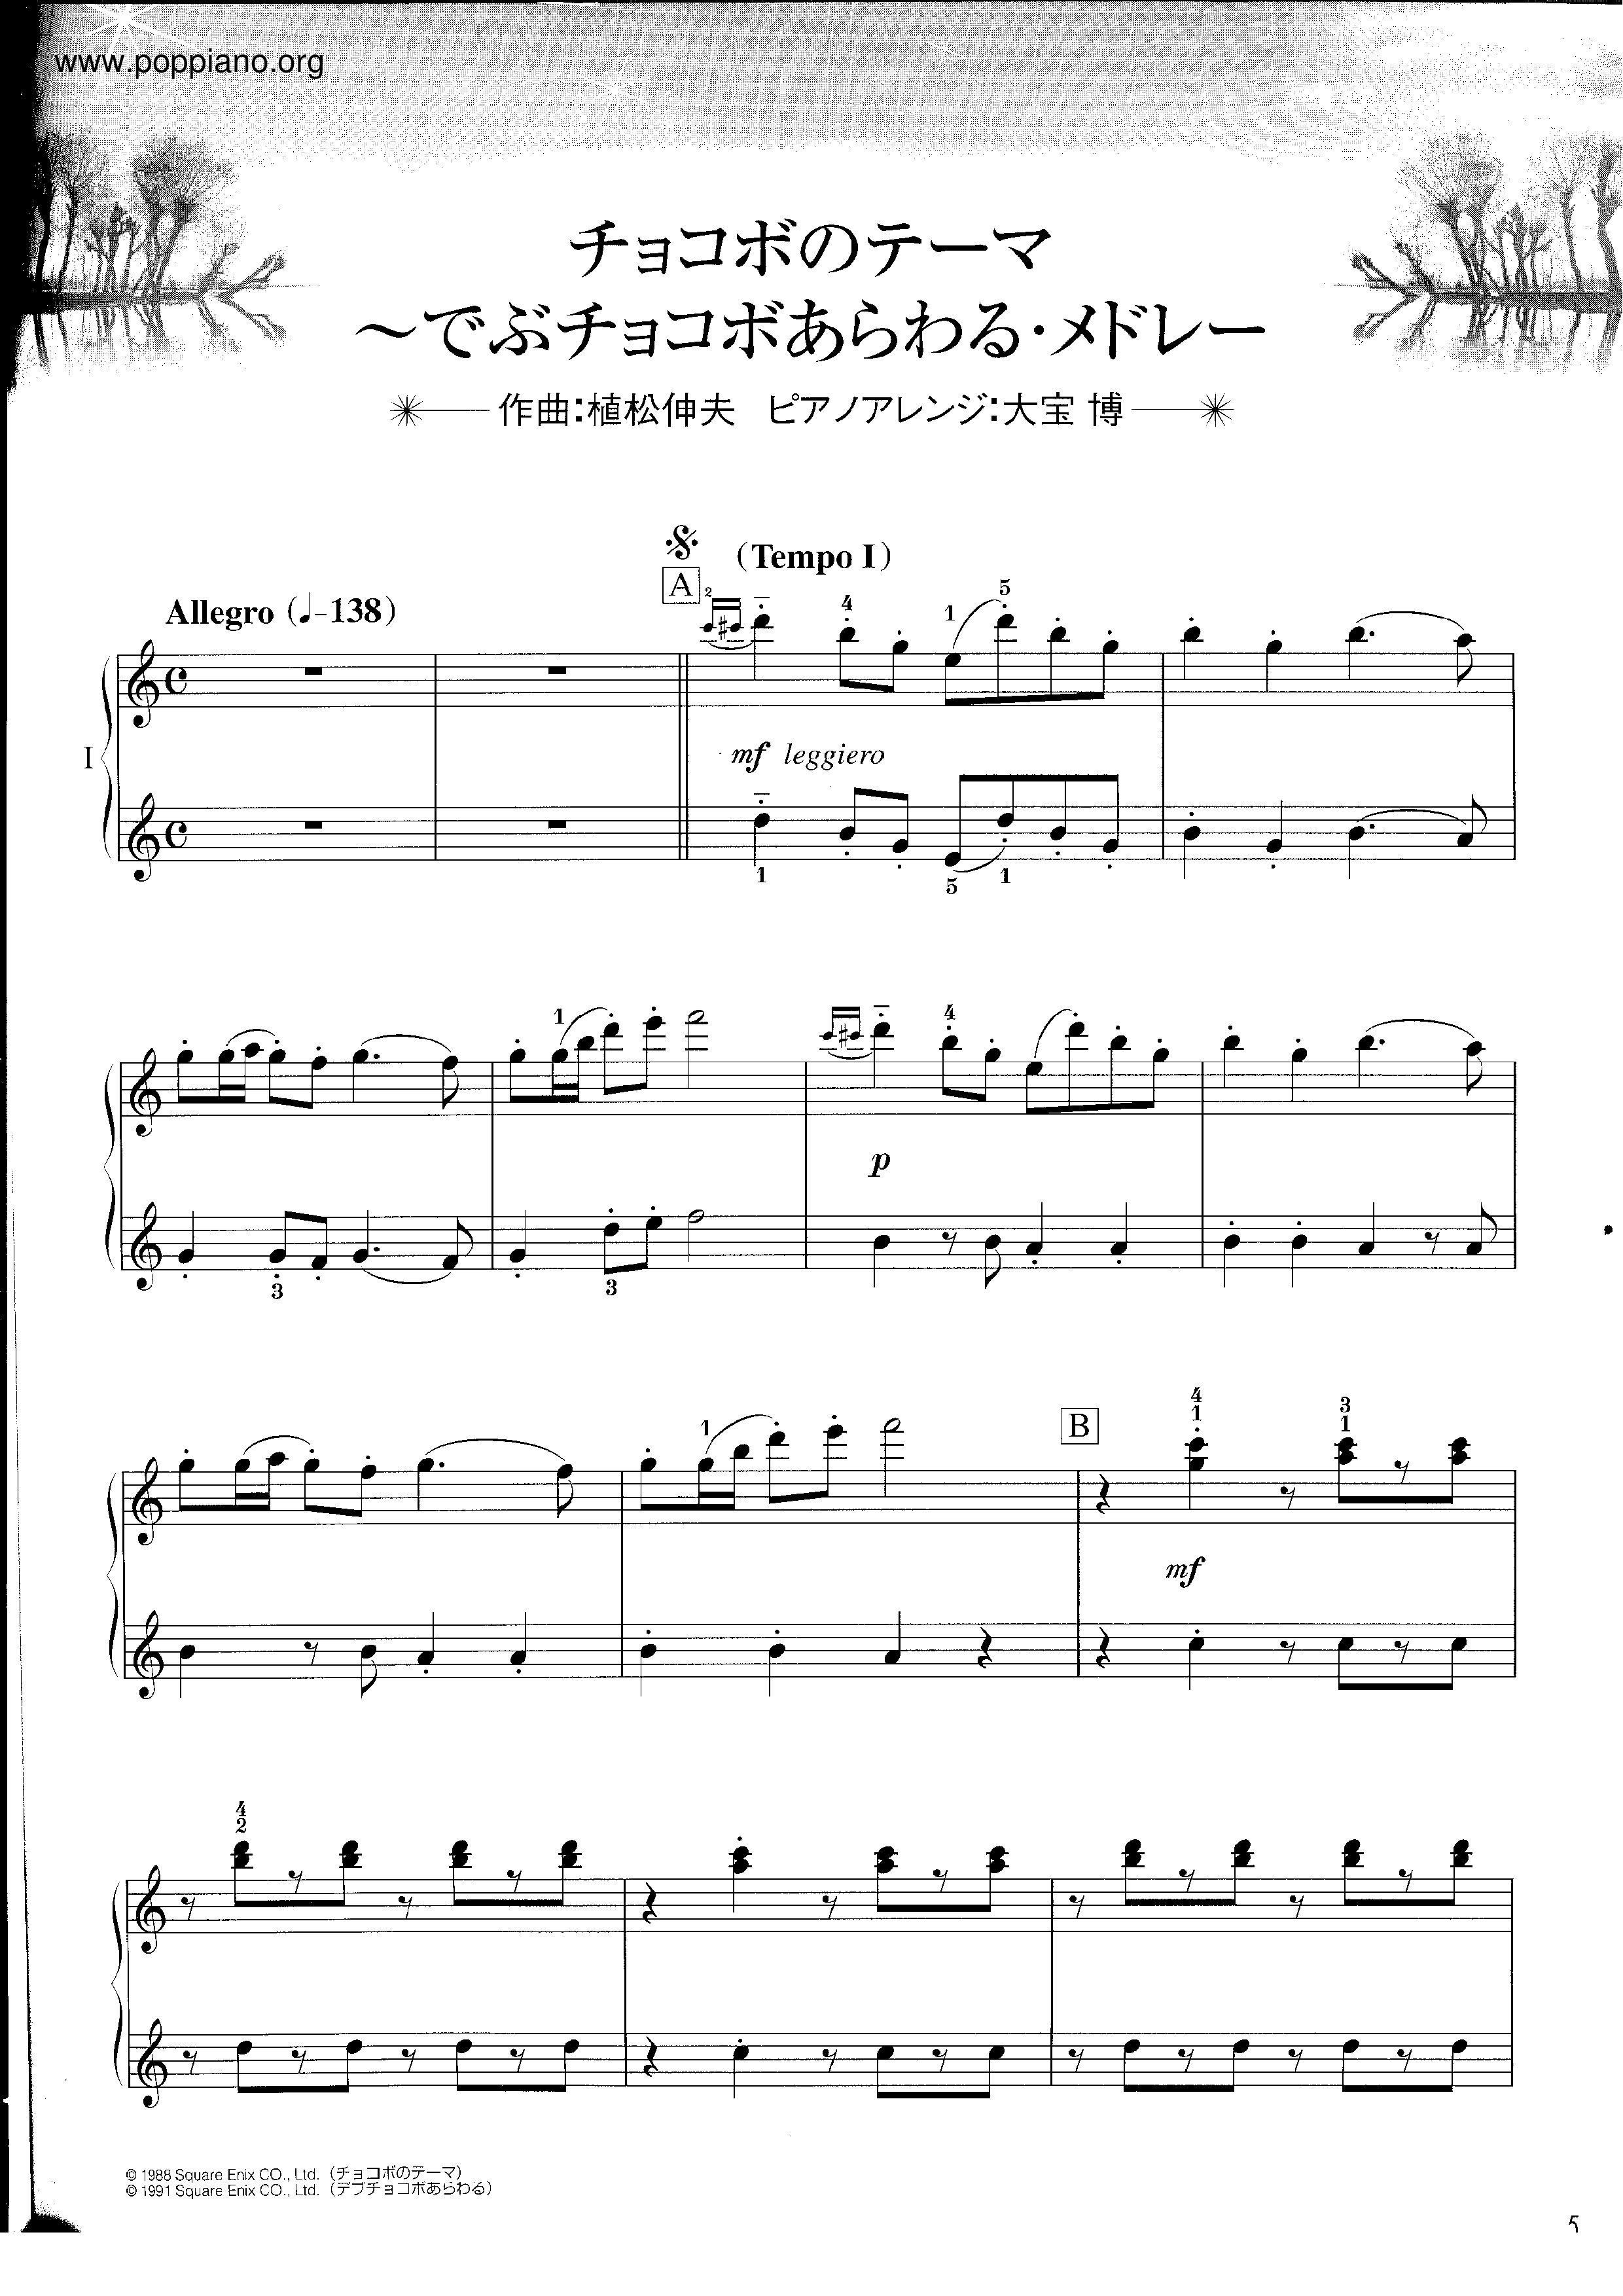 ☆植松伸夫 - チョコボのテーマ ~でぶチョコボあらわるメドレー 楽谱